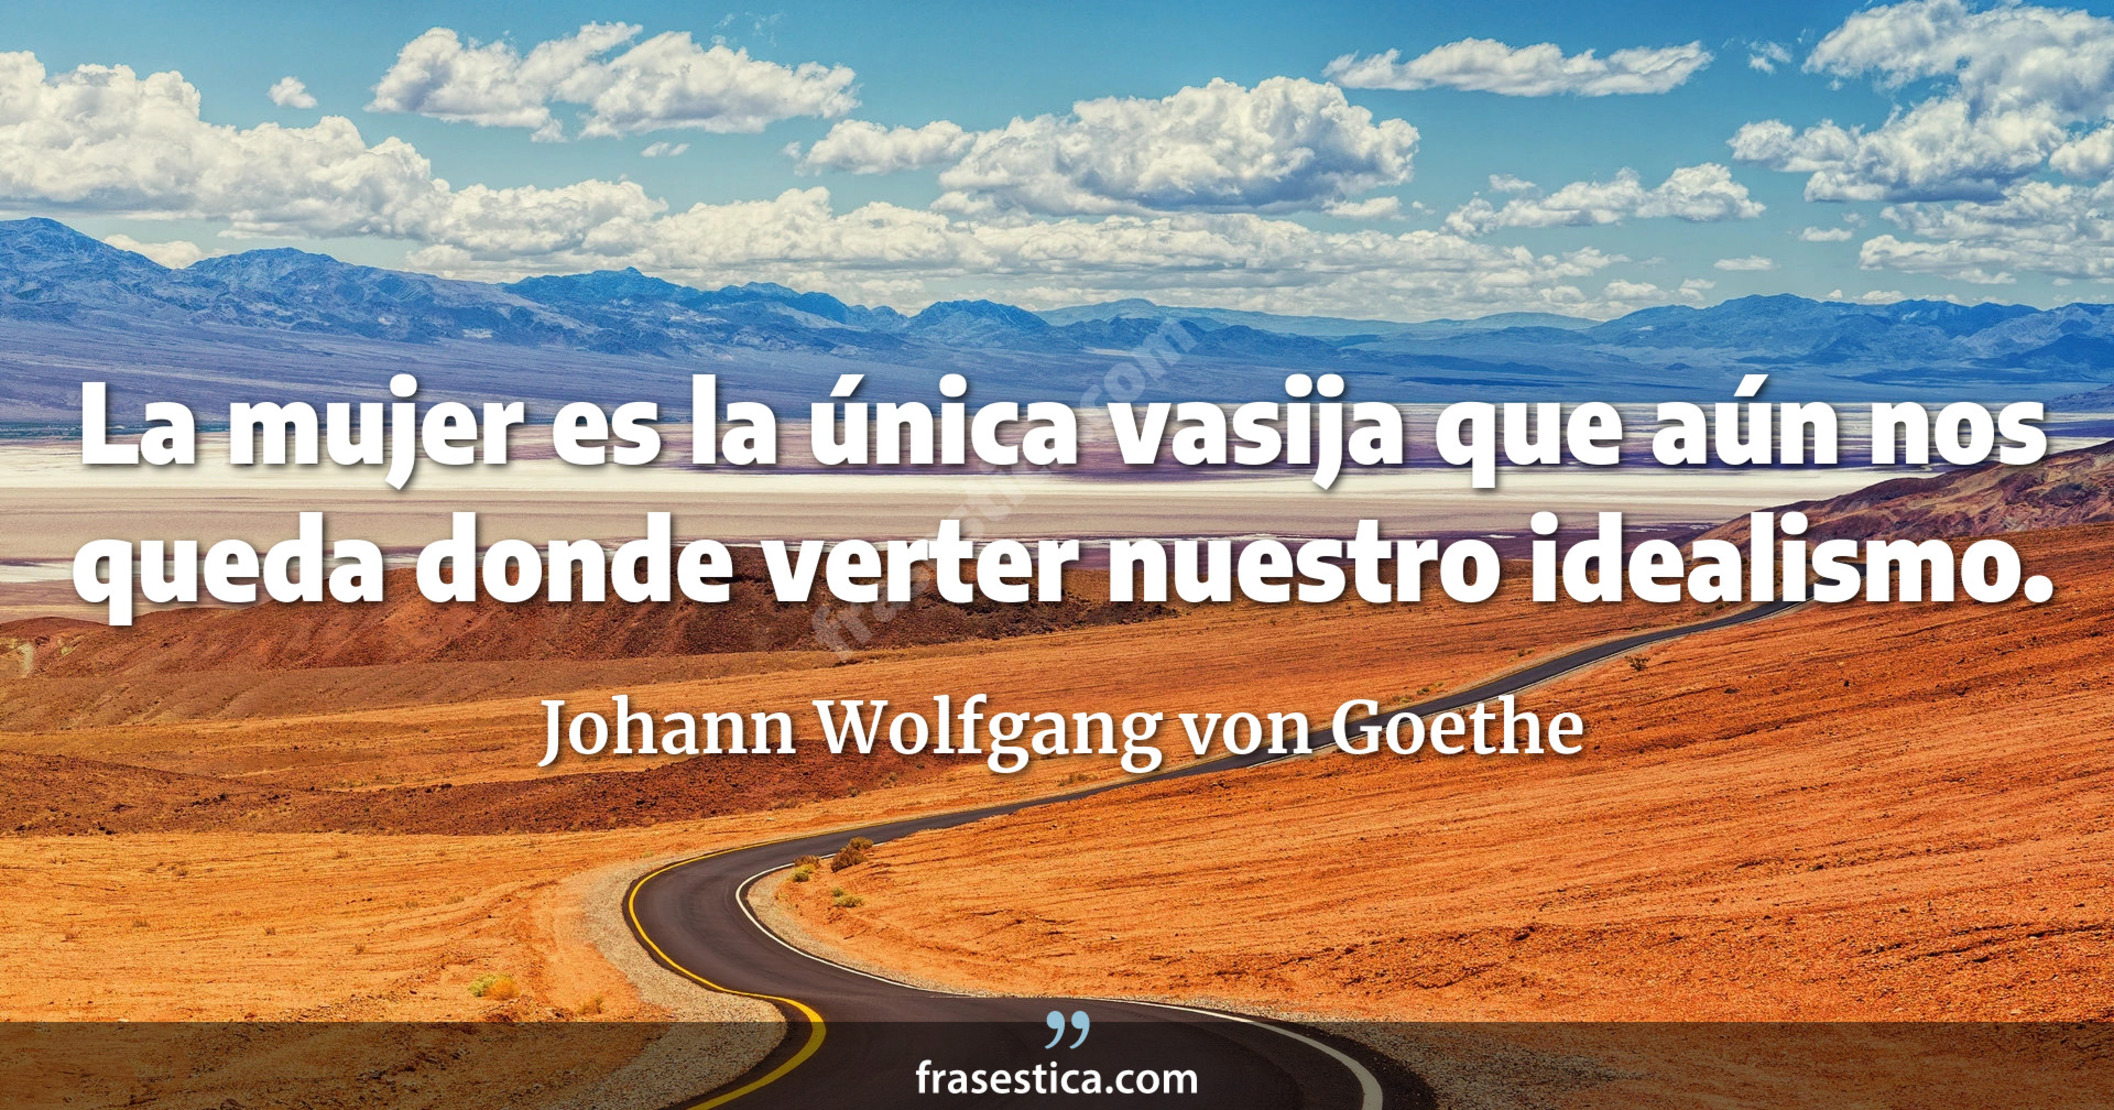 La mujer es la única vasija que aún nos queda donde verter nuestro idealismo. - Johann Wolfgang von Goethe